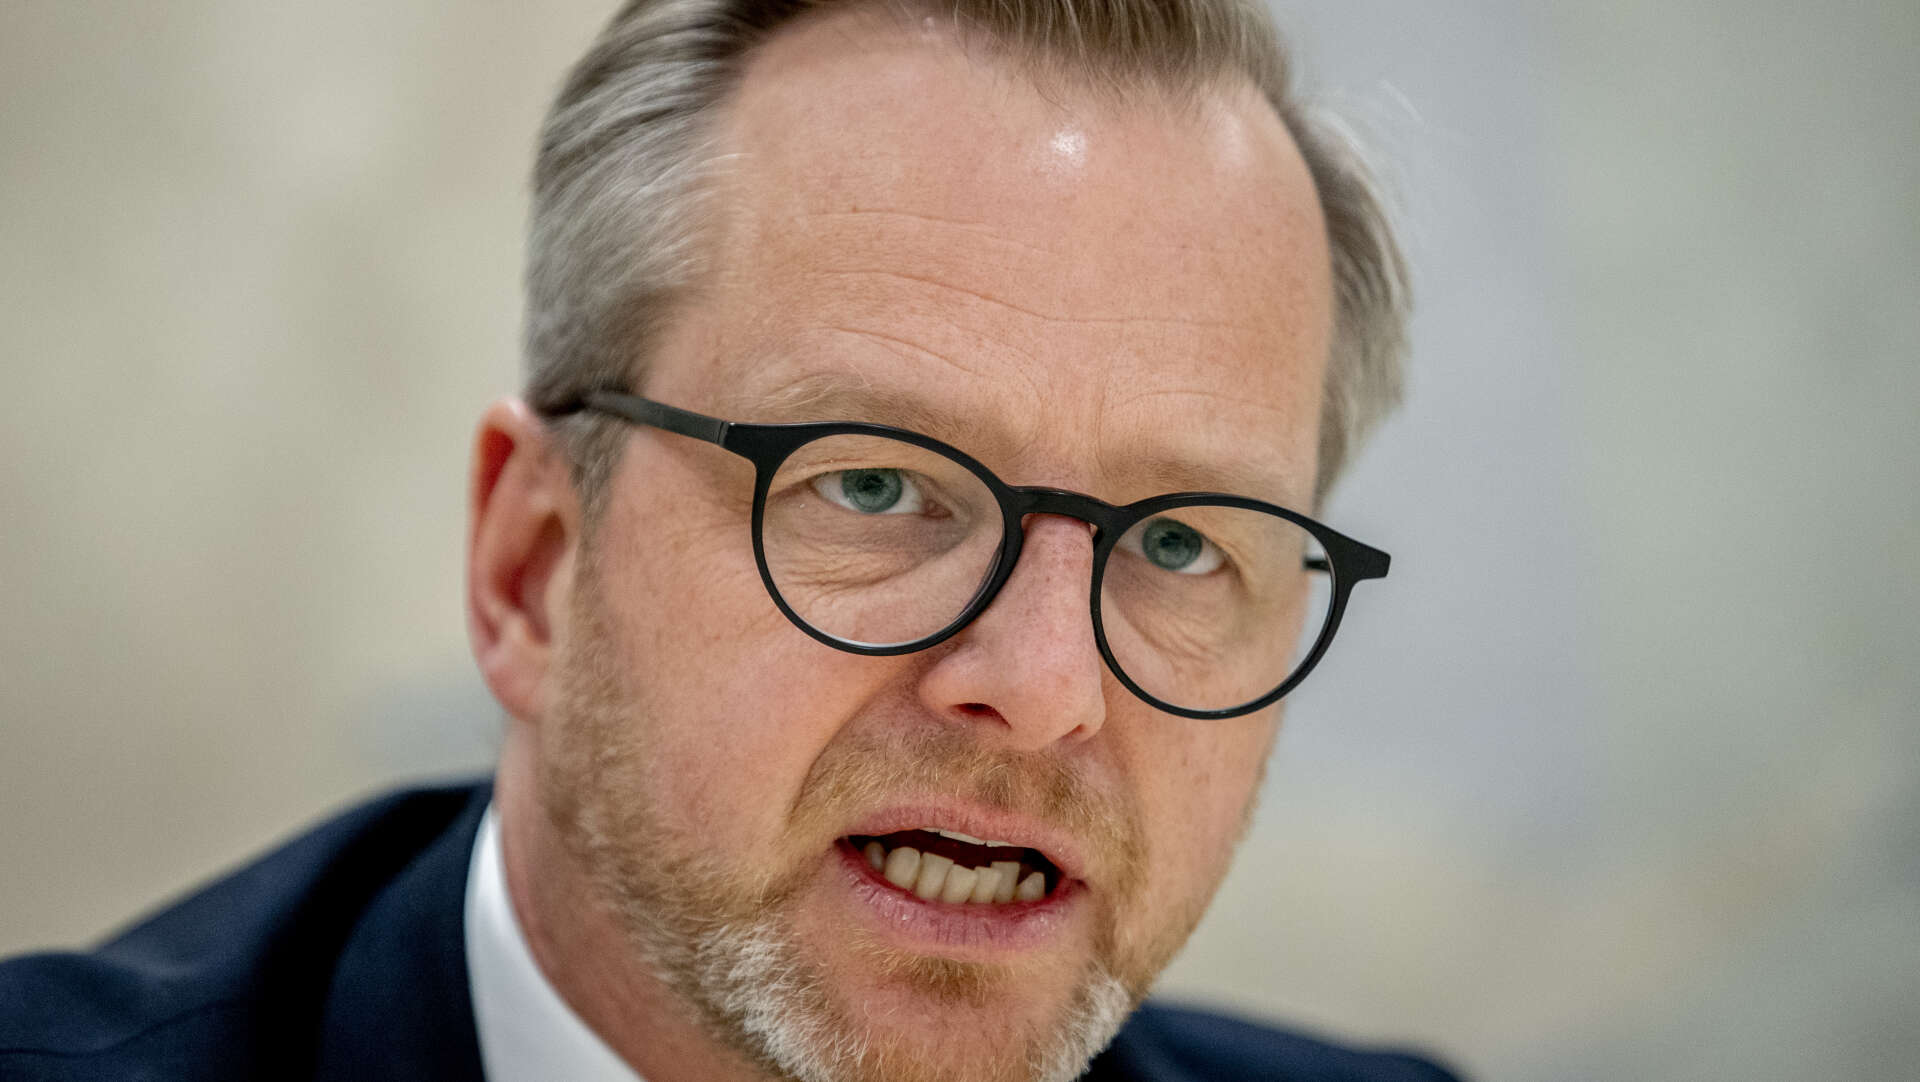 Finansminister Mikael Damberg (S) meddelade under ett besök i Göteborg att regeringen förbereder ett krispaket för de höga drivmedelspriserna.